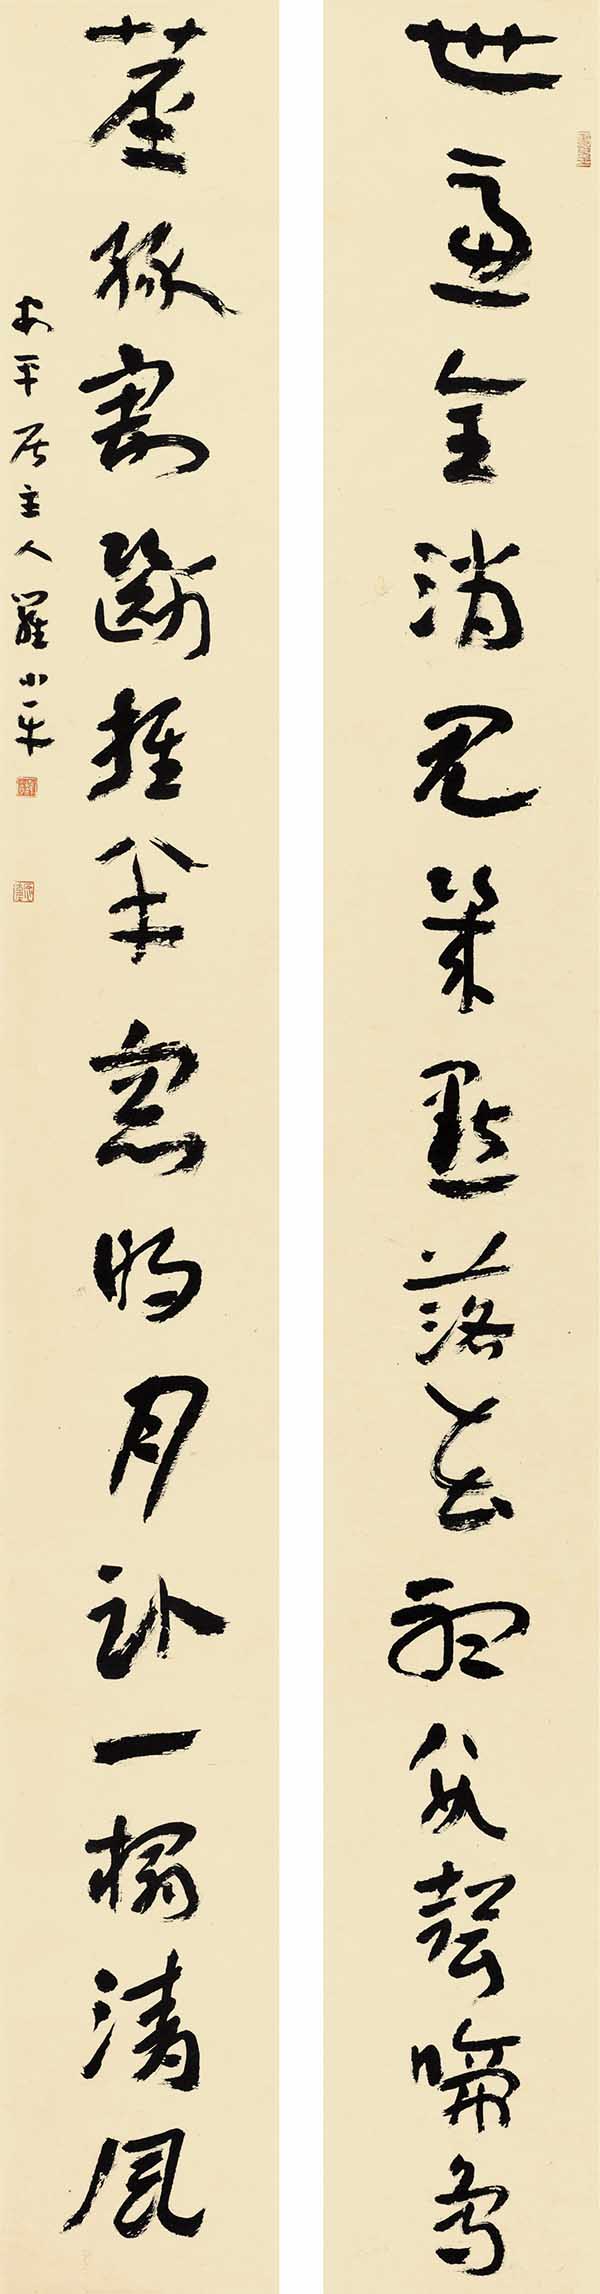 散之风神·首届中国书法学术提名双年展